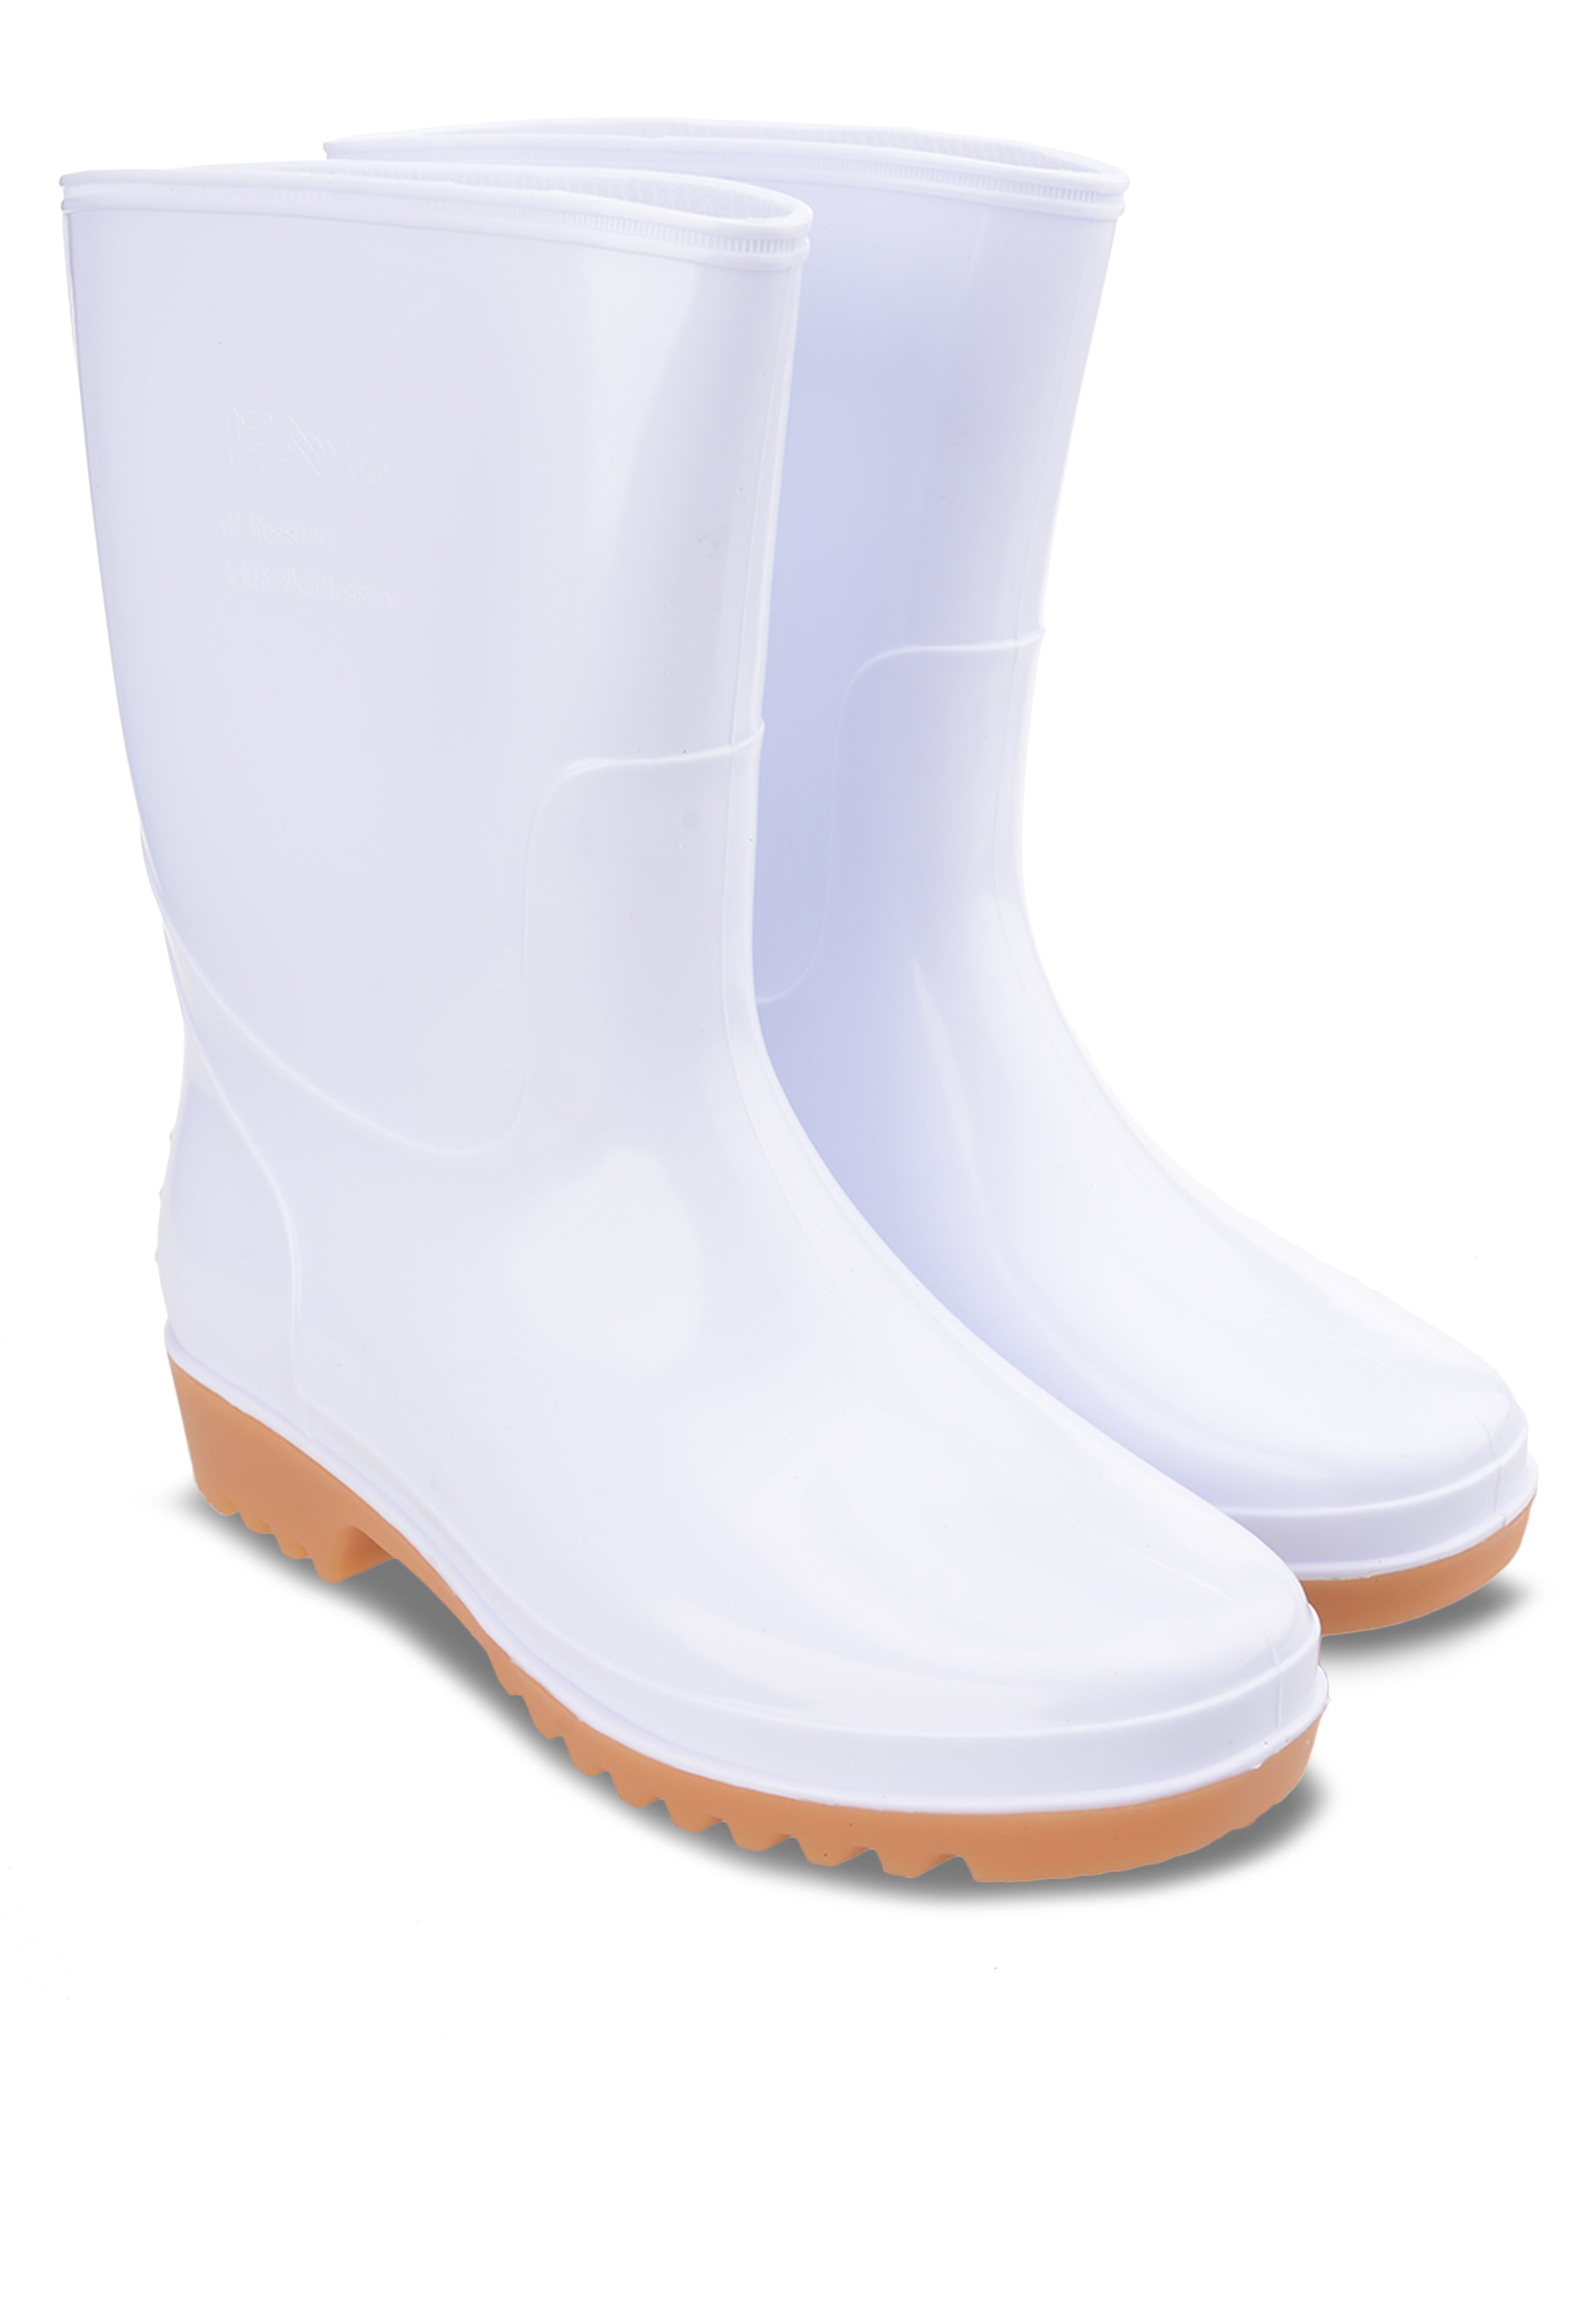 Short Labor Rain Boots (Hong Kong Safety Mark)